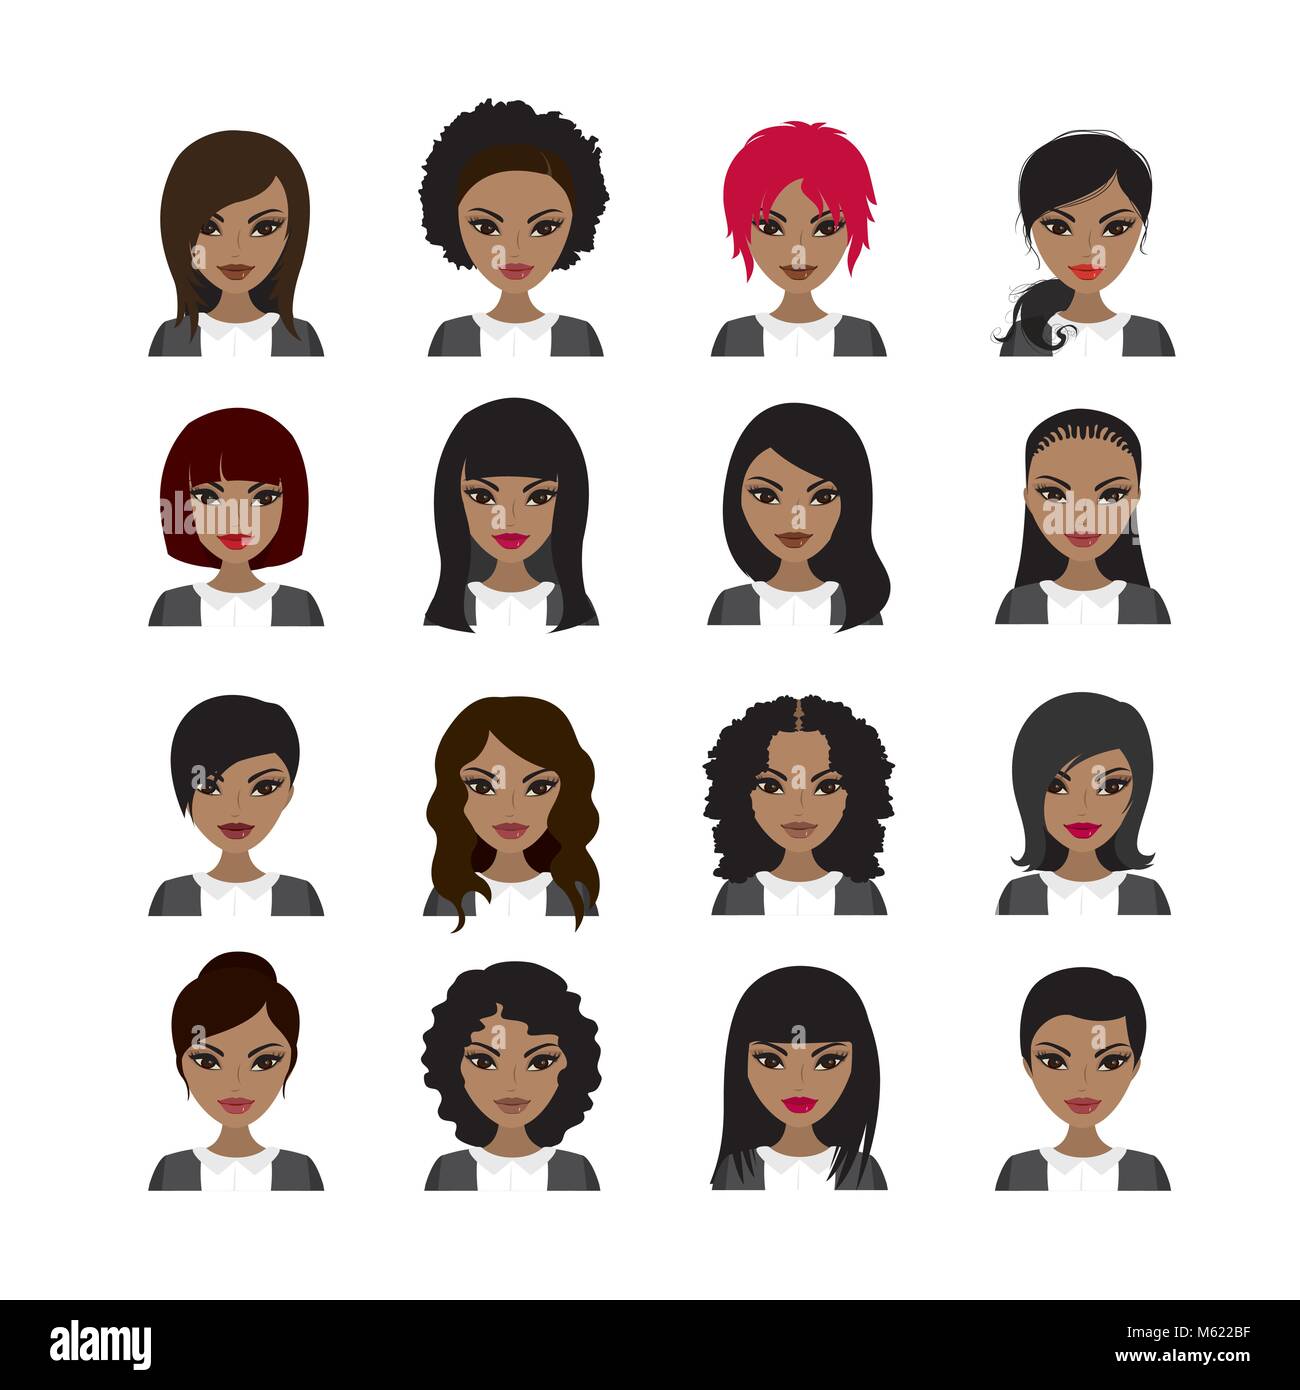 Vector Illustration of Black Women avatar. Les visages et les styles de cheveux. Stock Vector illustration Illustration de Vecteur